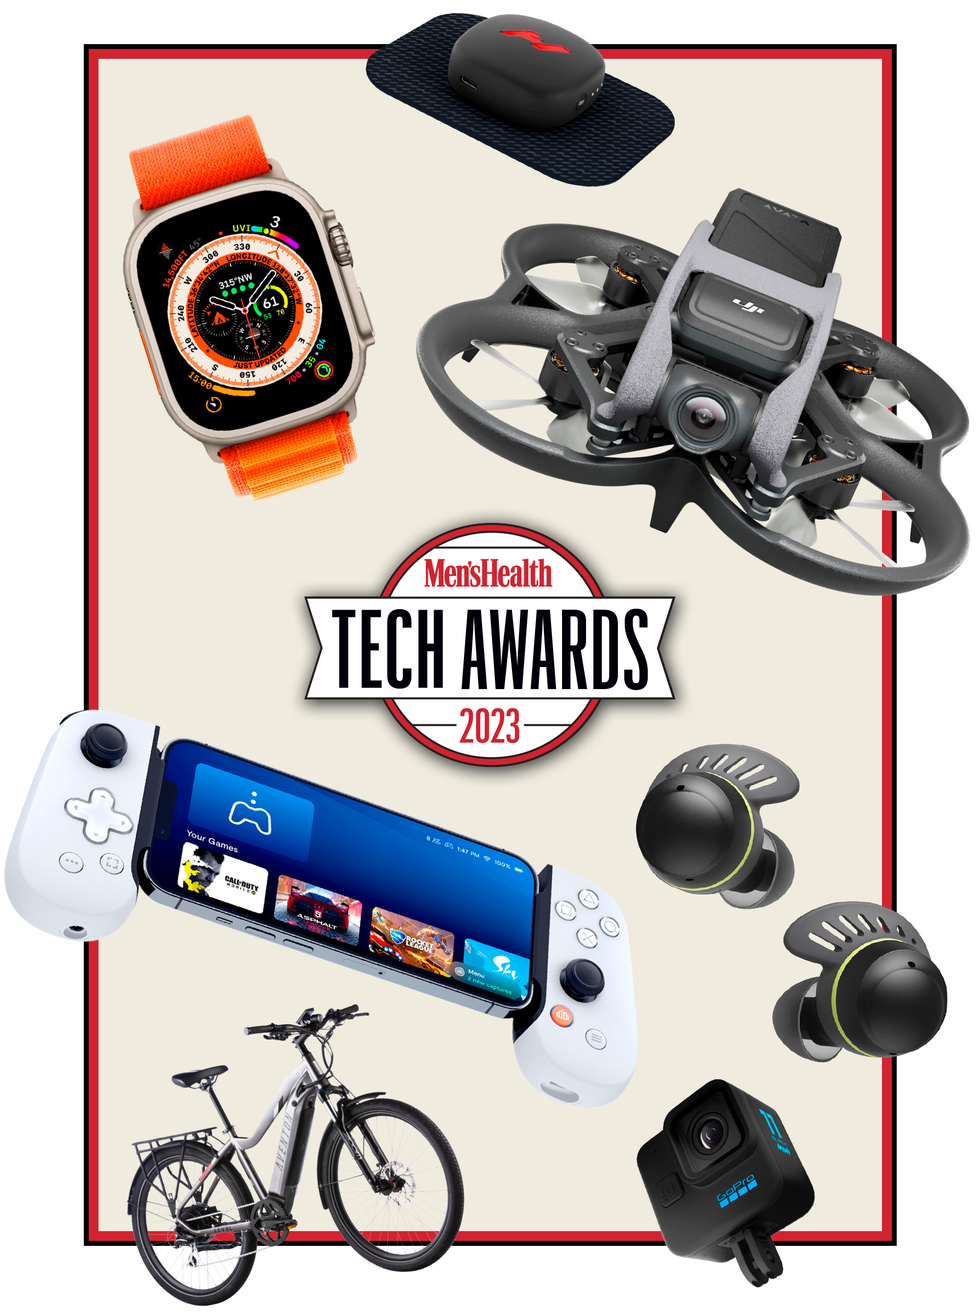 The 2023 Men's Health Tech Awards - Best Tech Gadgets for Men